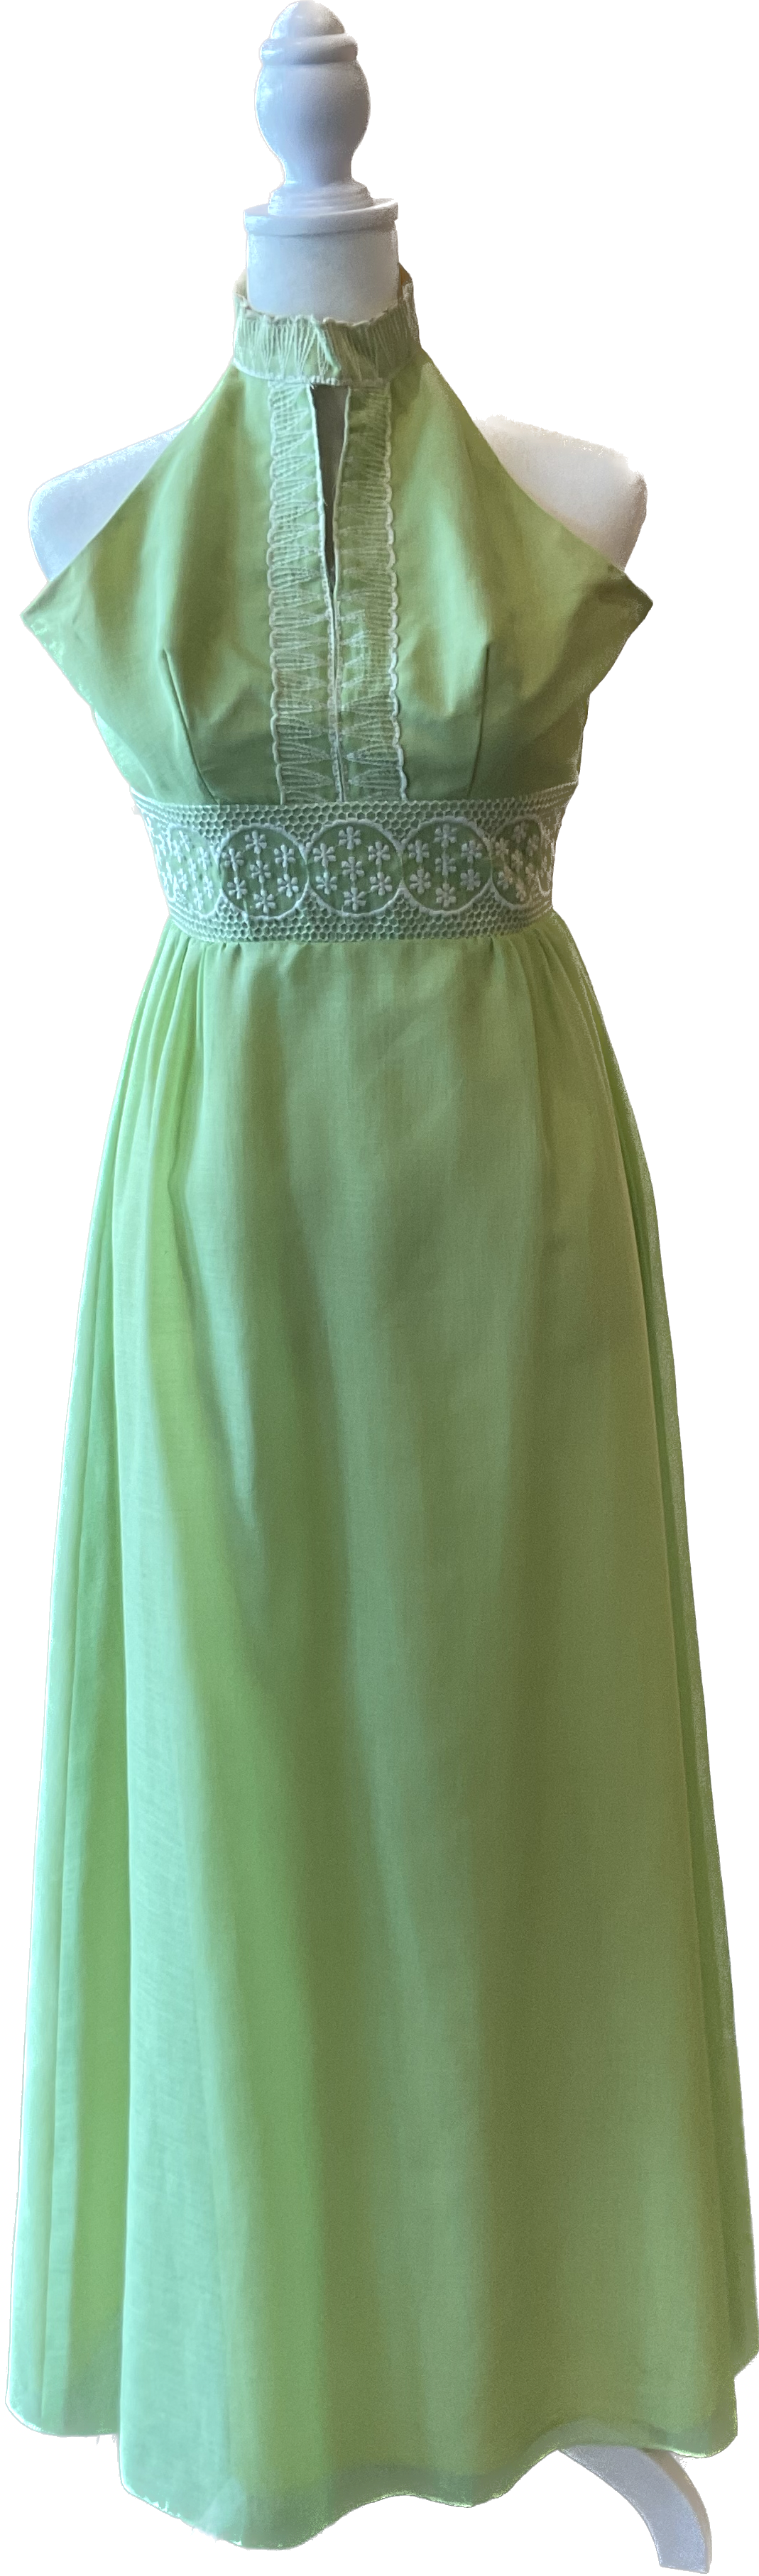 Vintage 60s/70s Lime Green Halter Dress